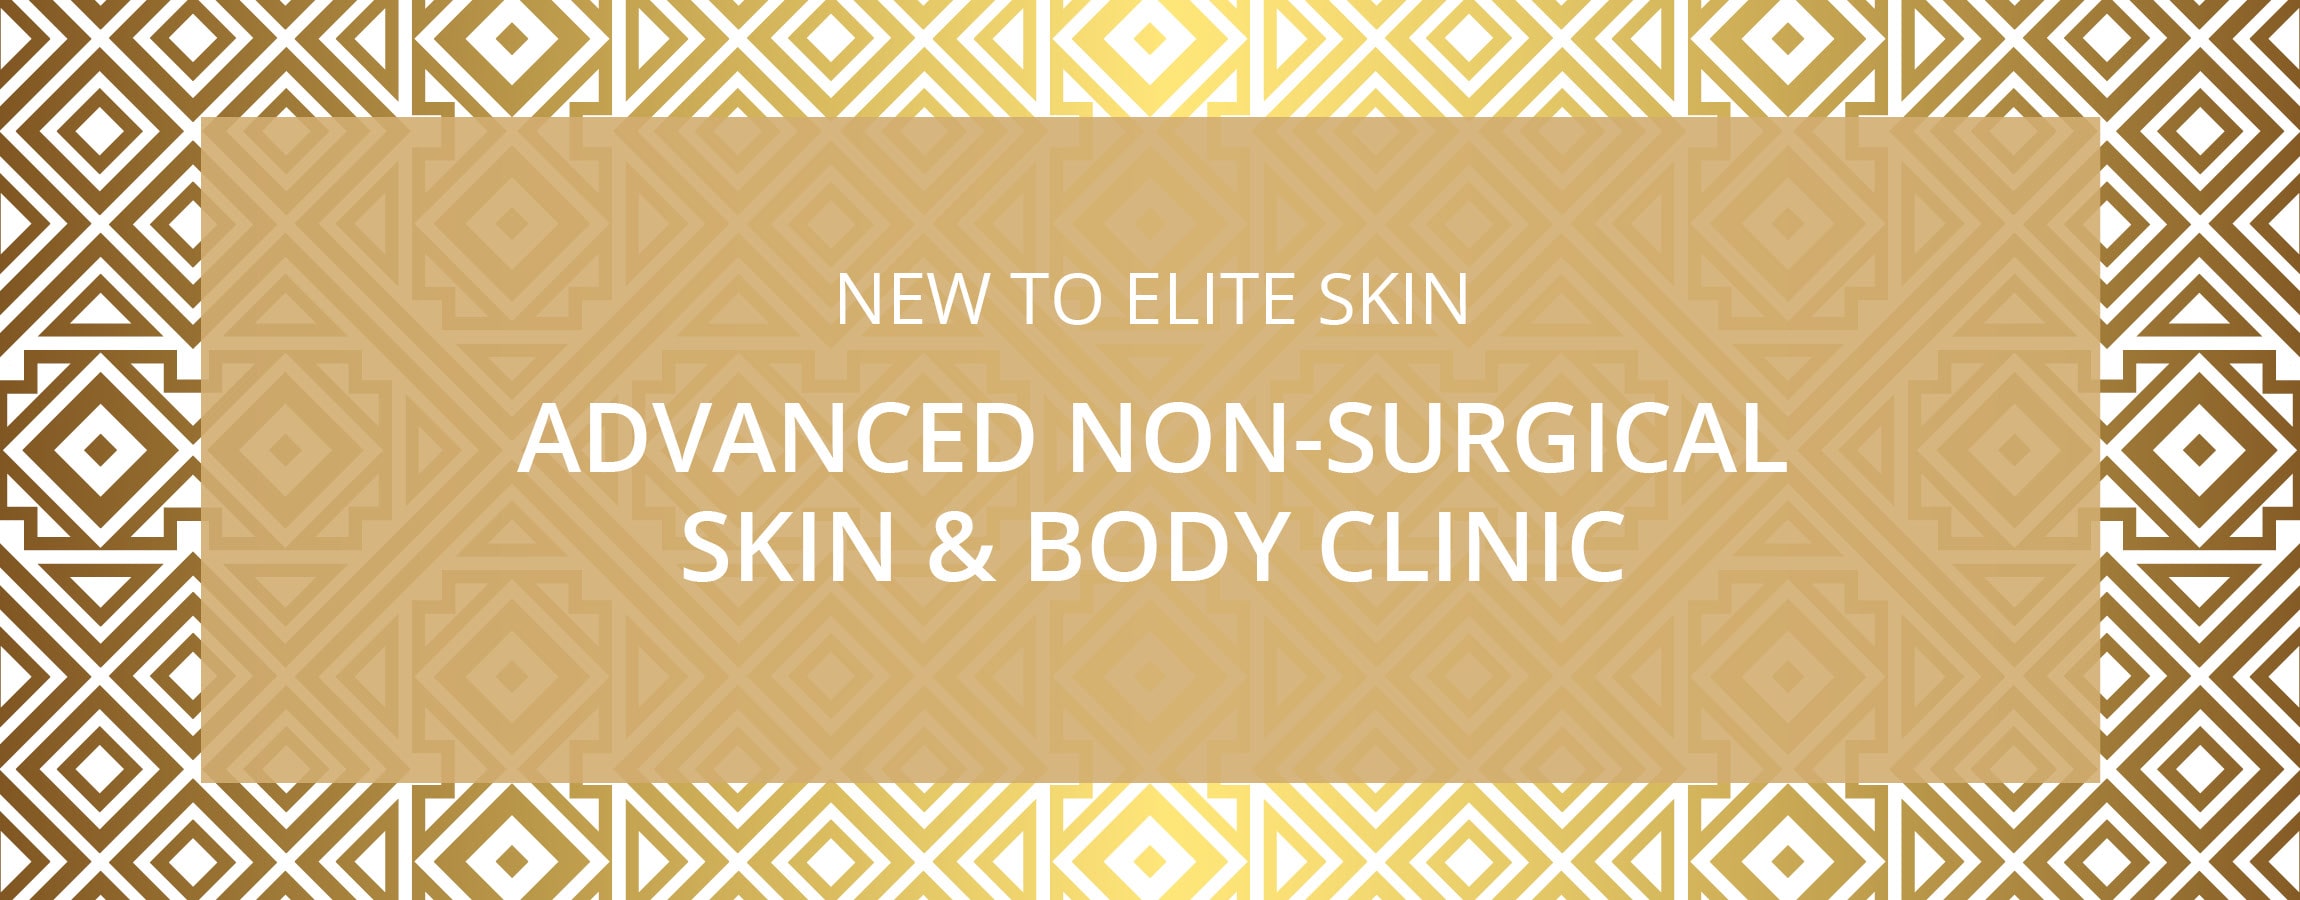 Elite-Skin-Beauty-Sanctuary-web-02-min.jpg